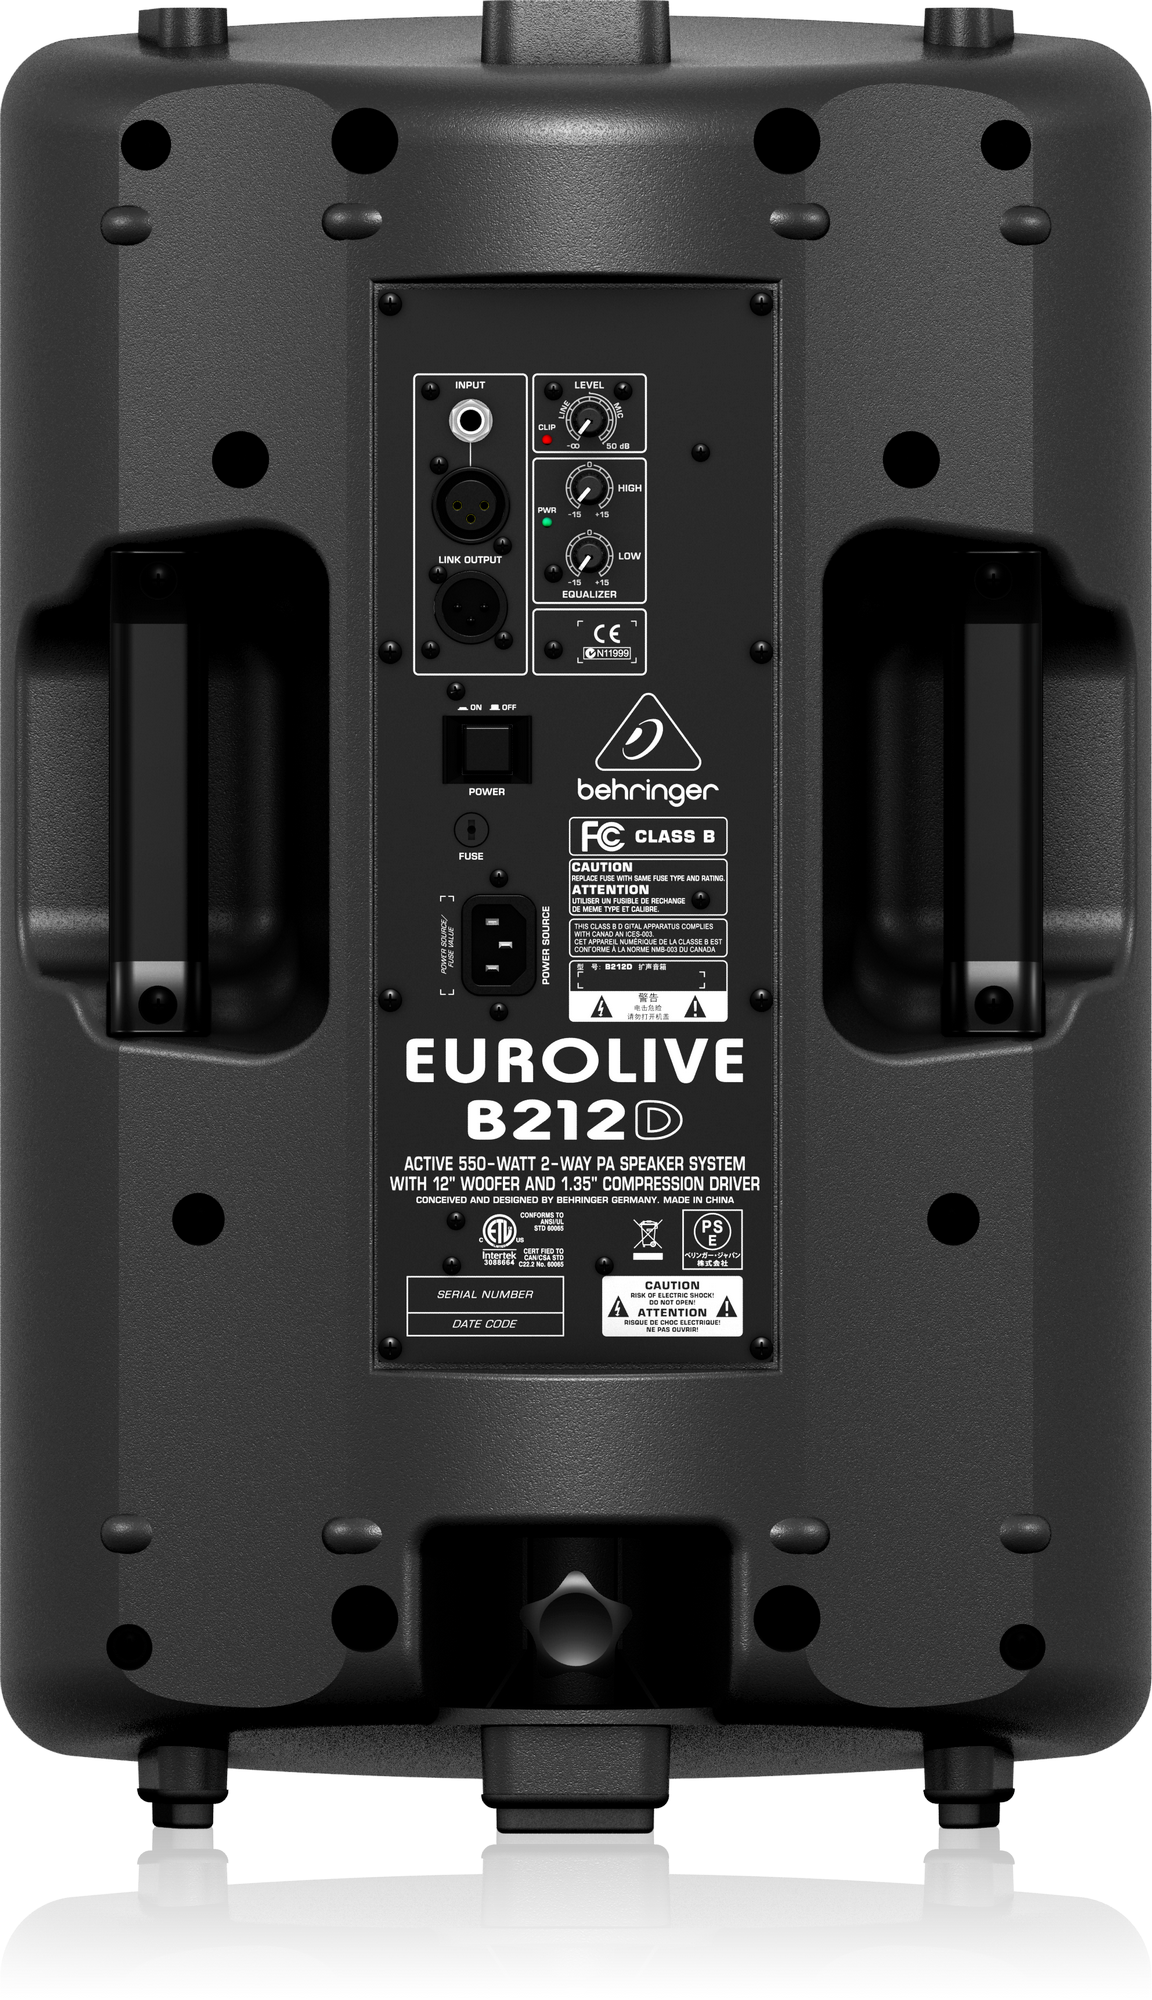 ベリンガー EUROLIVE B212D - www.agdsicilia.it